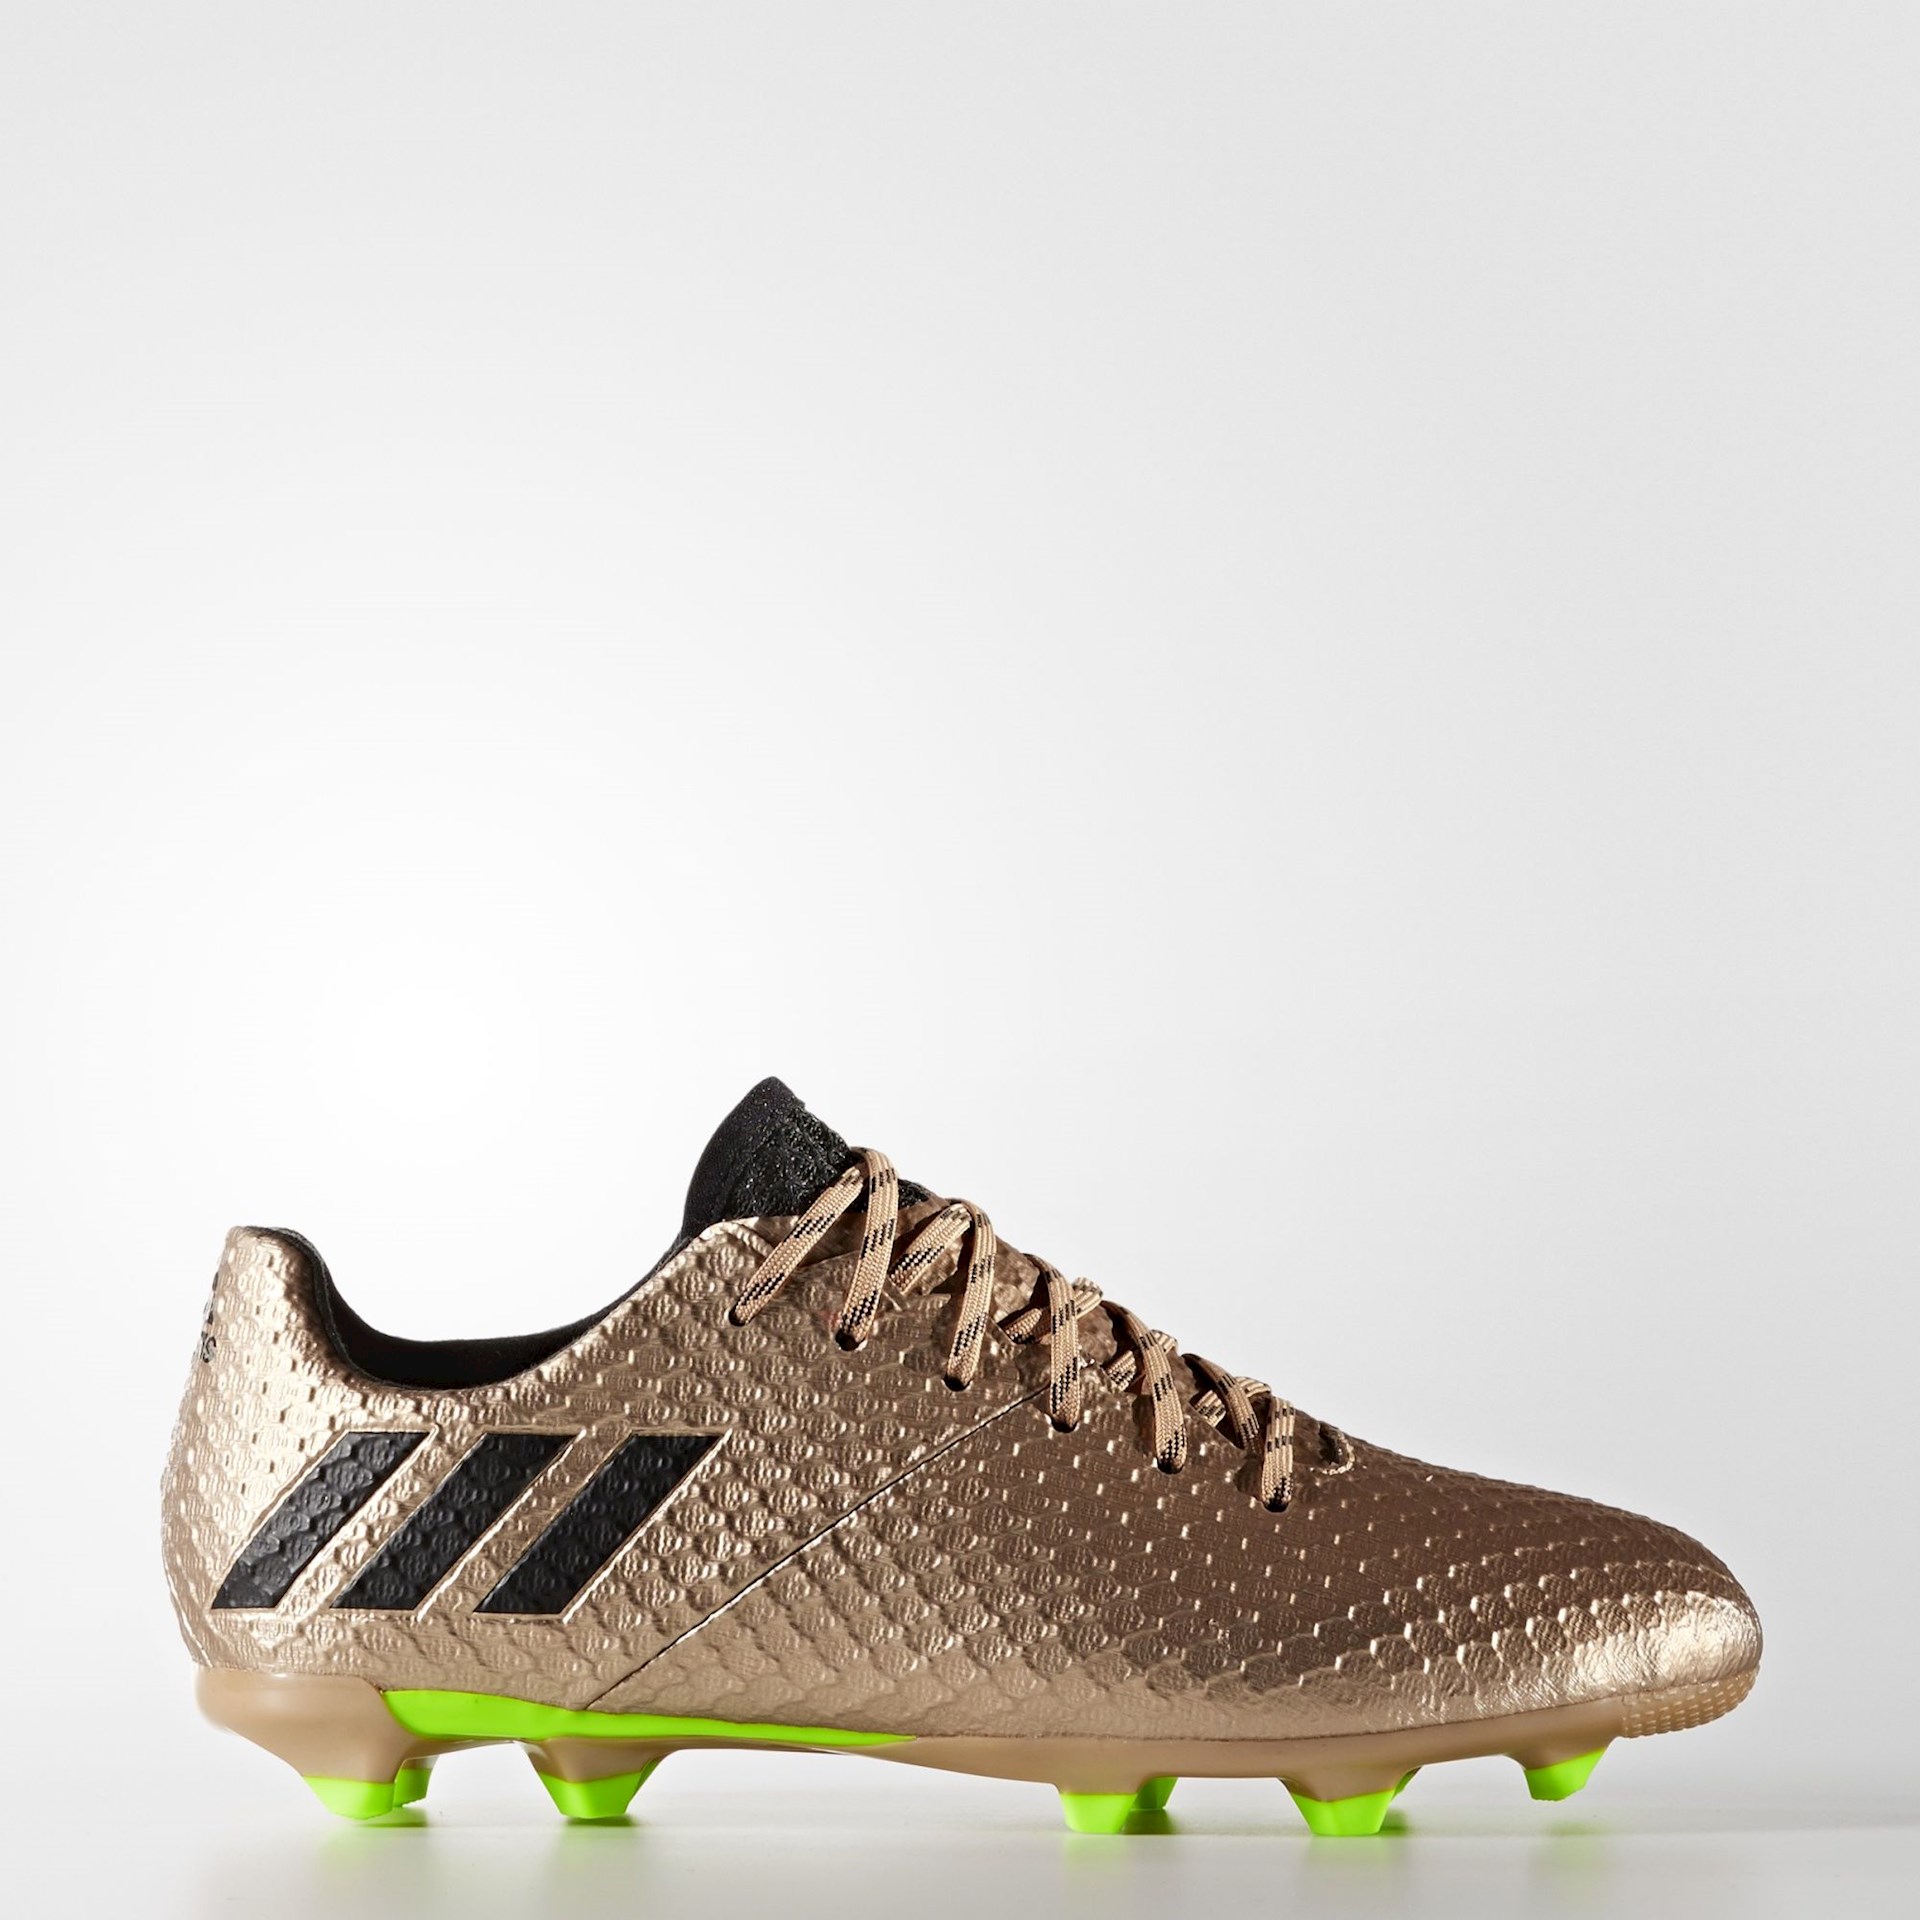 bereik Voordracht Ru adidas Messi 16 Voetbalschoenen - Voetbal-schoenen.eu